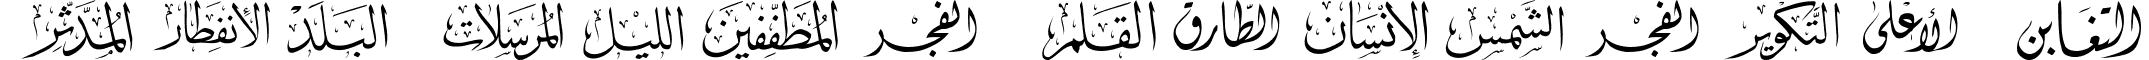 Mcs Swer AlQuran 3 font - mcs_GF3.ttf